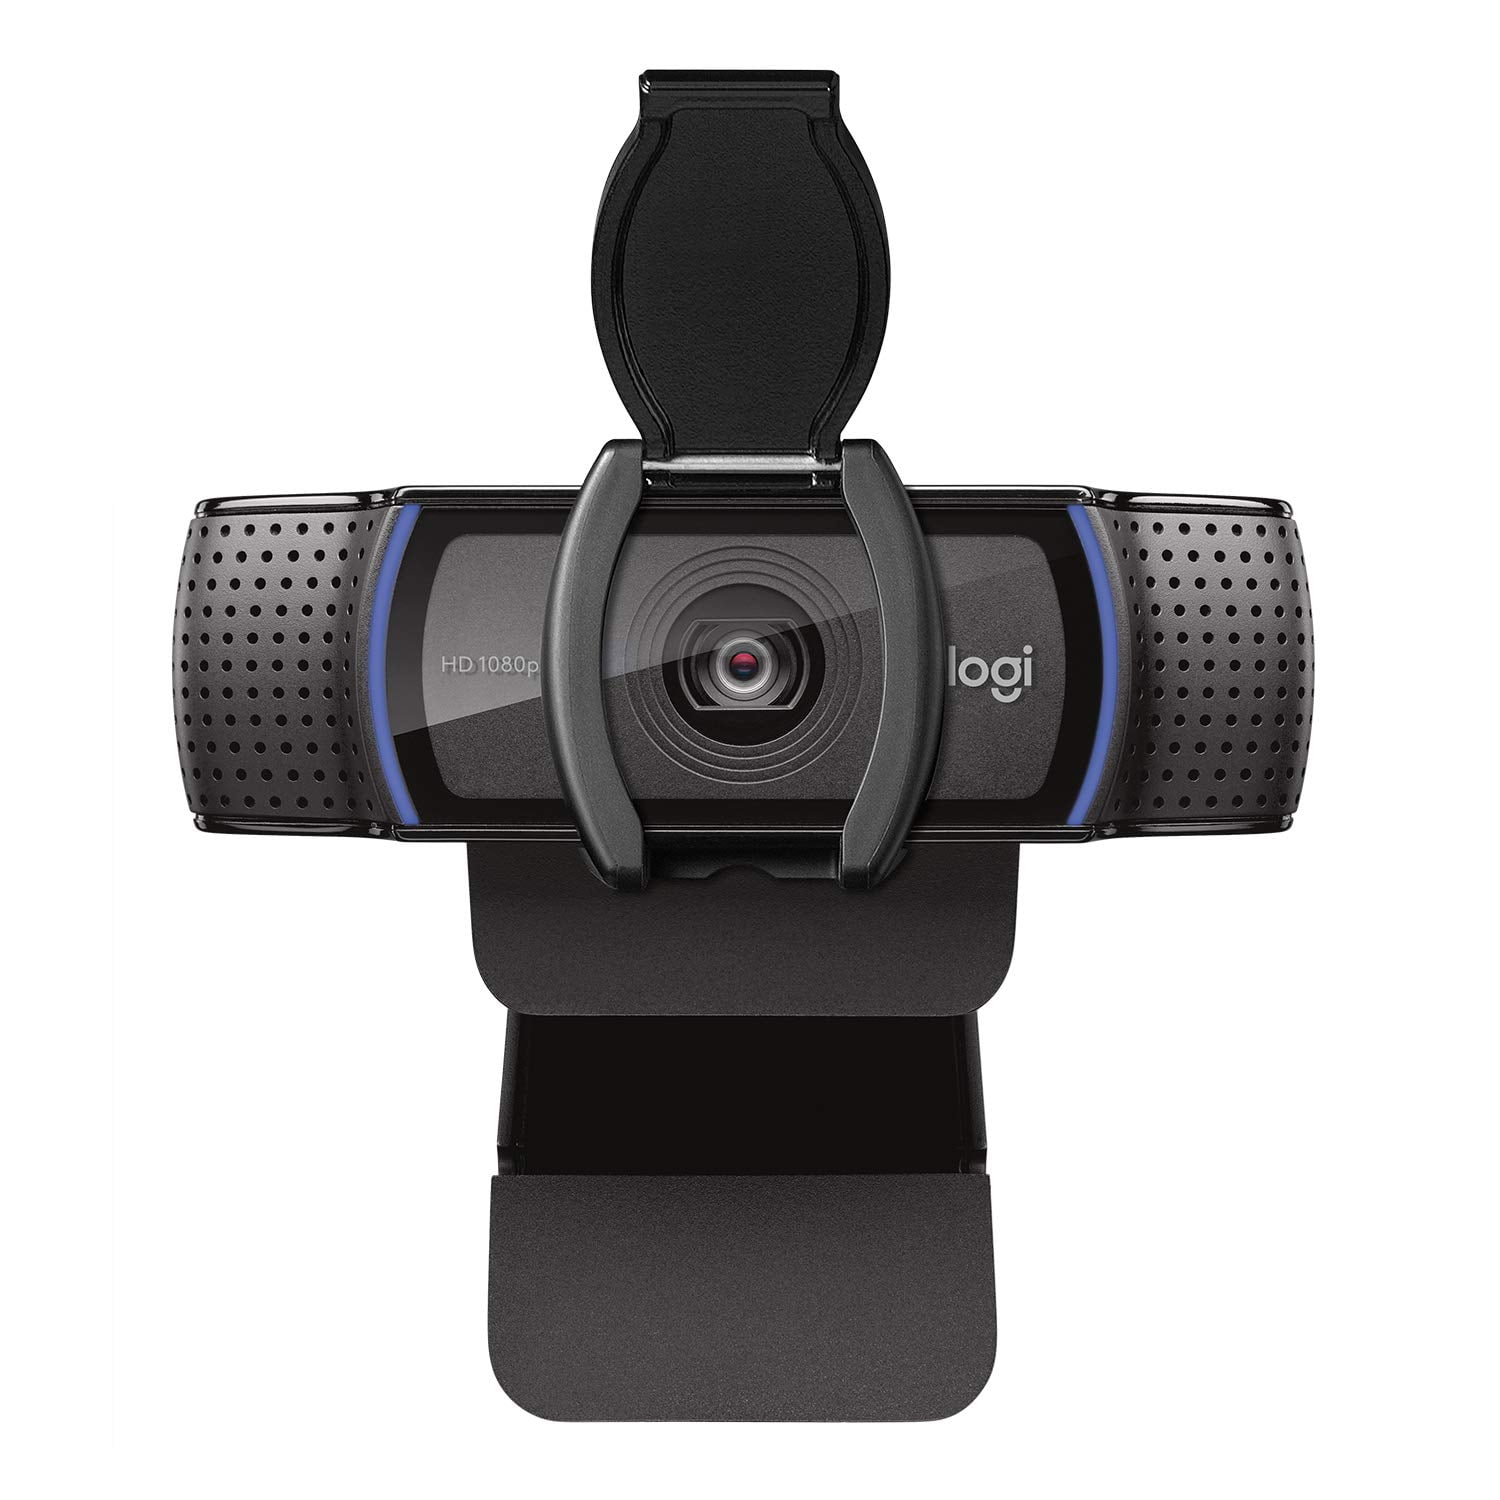 Diffusion en Full HD 1080p avec Trépied Webcam Logitech C922 Pro Stream Noir Logitech-Pack de Démarrage pour les Streamers-Microphone USB Blue Snowball Black iCE